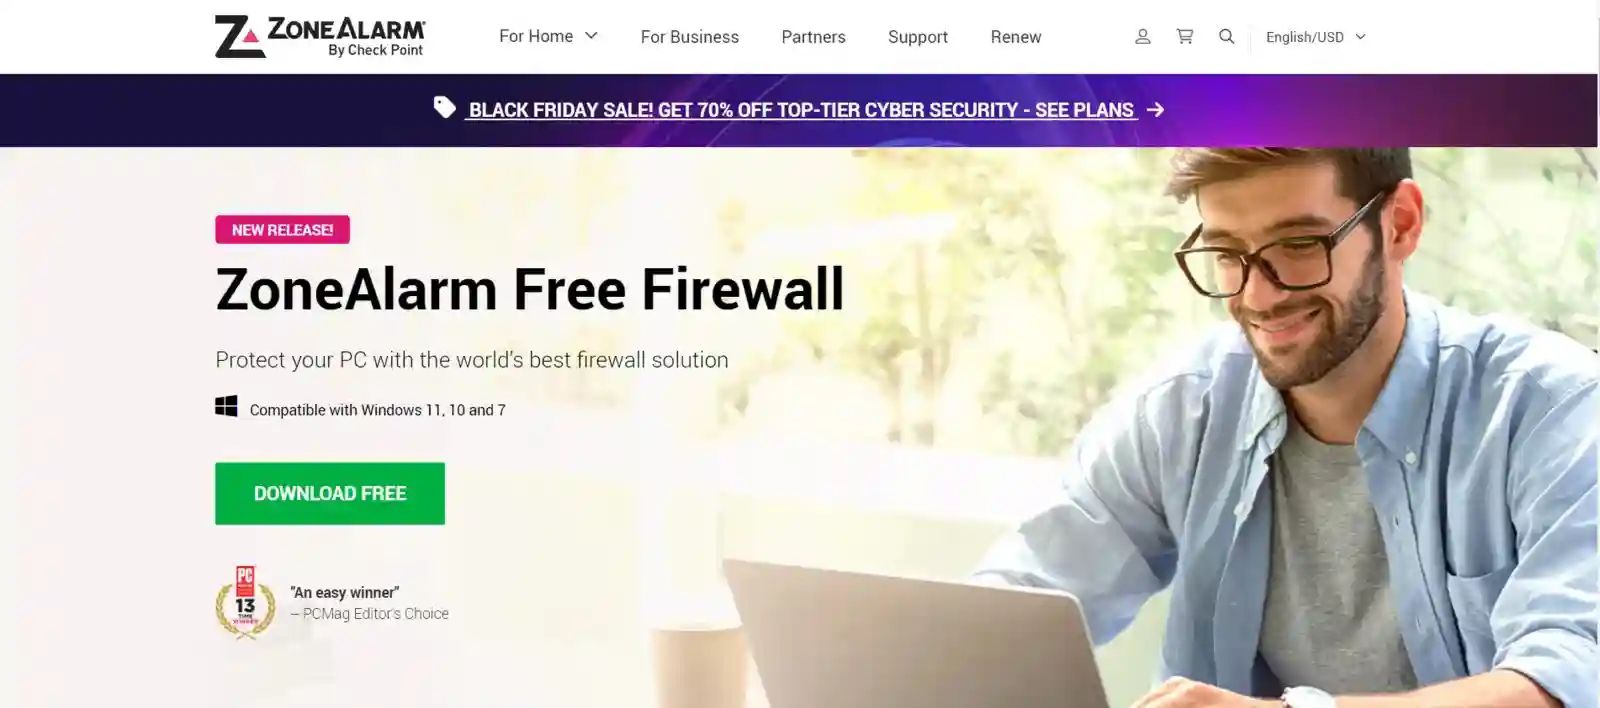 zone alarm free firewall